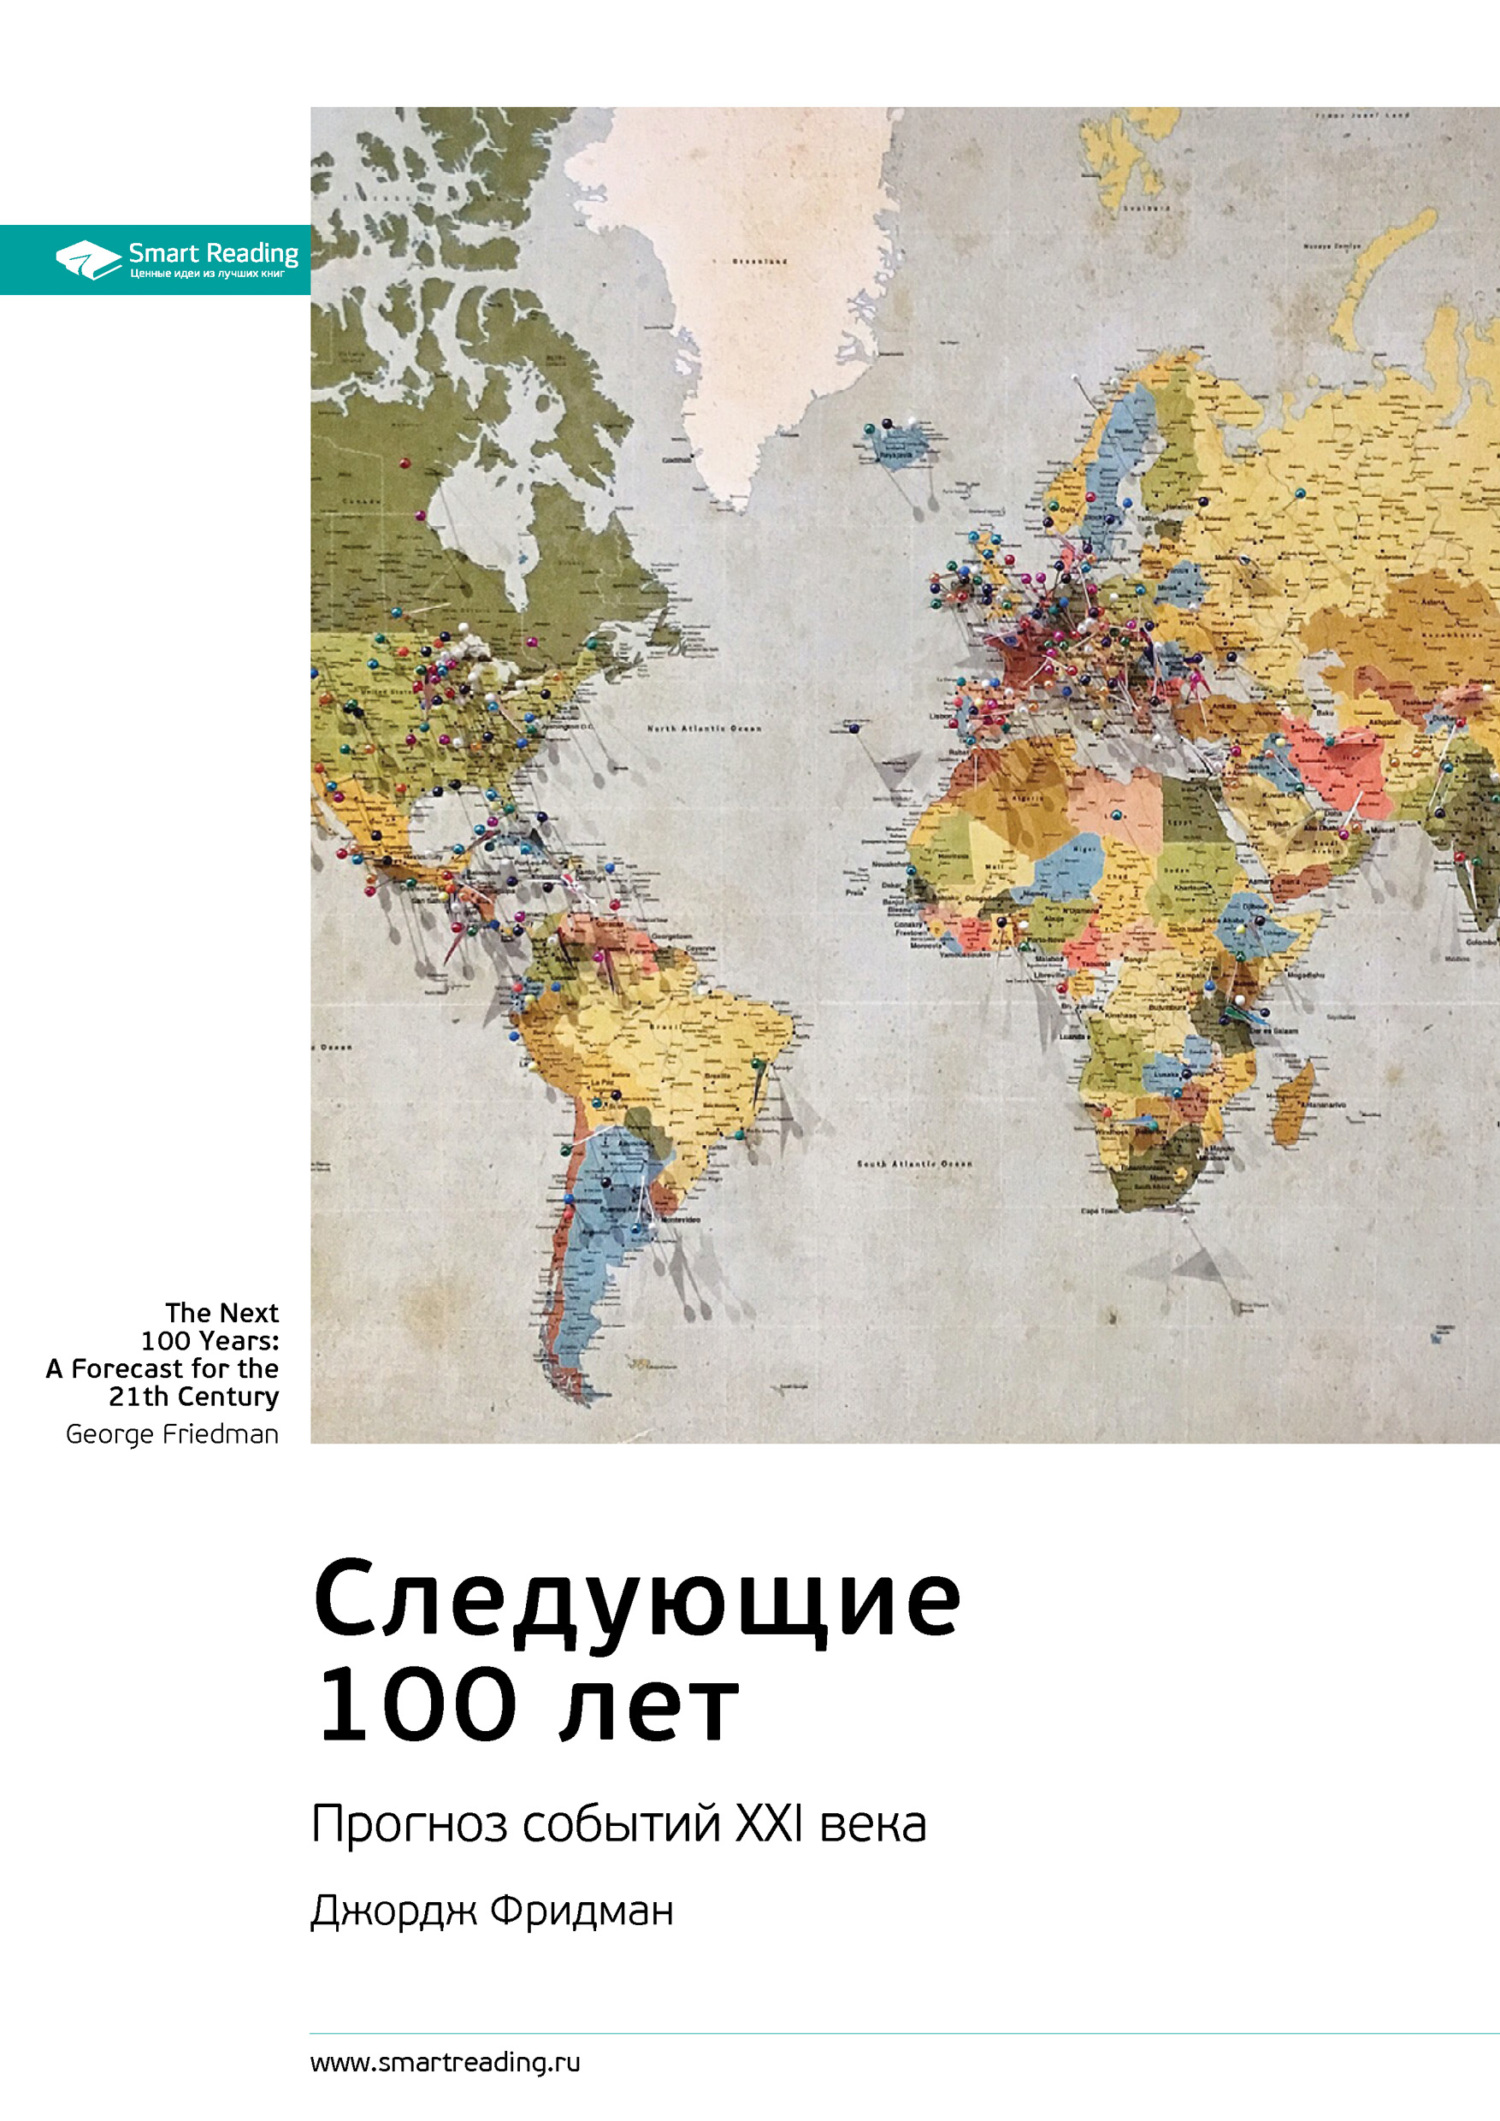 Джордж Фридман следующие 100 лет: прогноз событий XXI века. Следующие 100 лет Джордж Фридман книга. Карта культурных различий. Карта культурных различий Эрин Мейер.